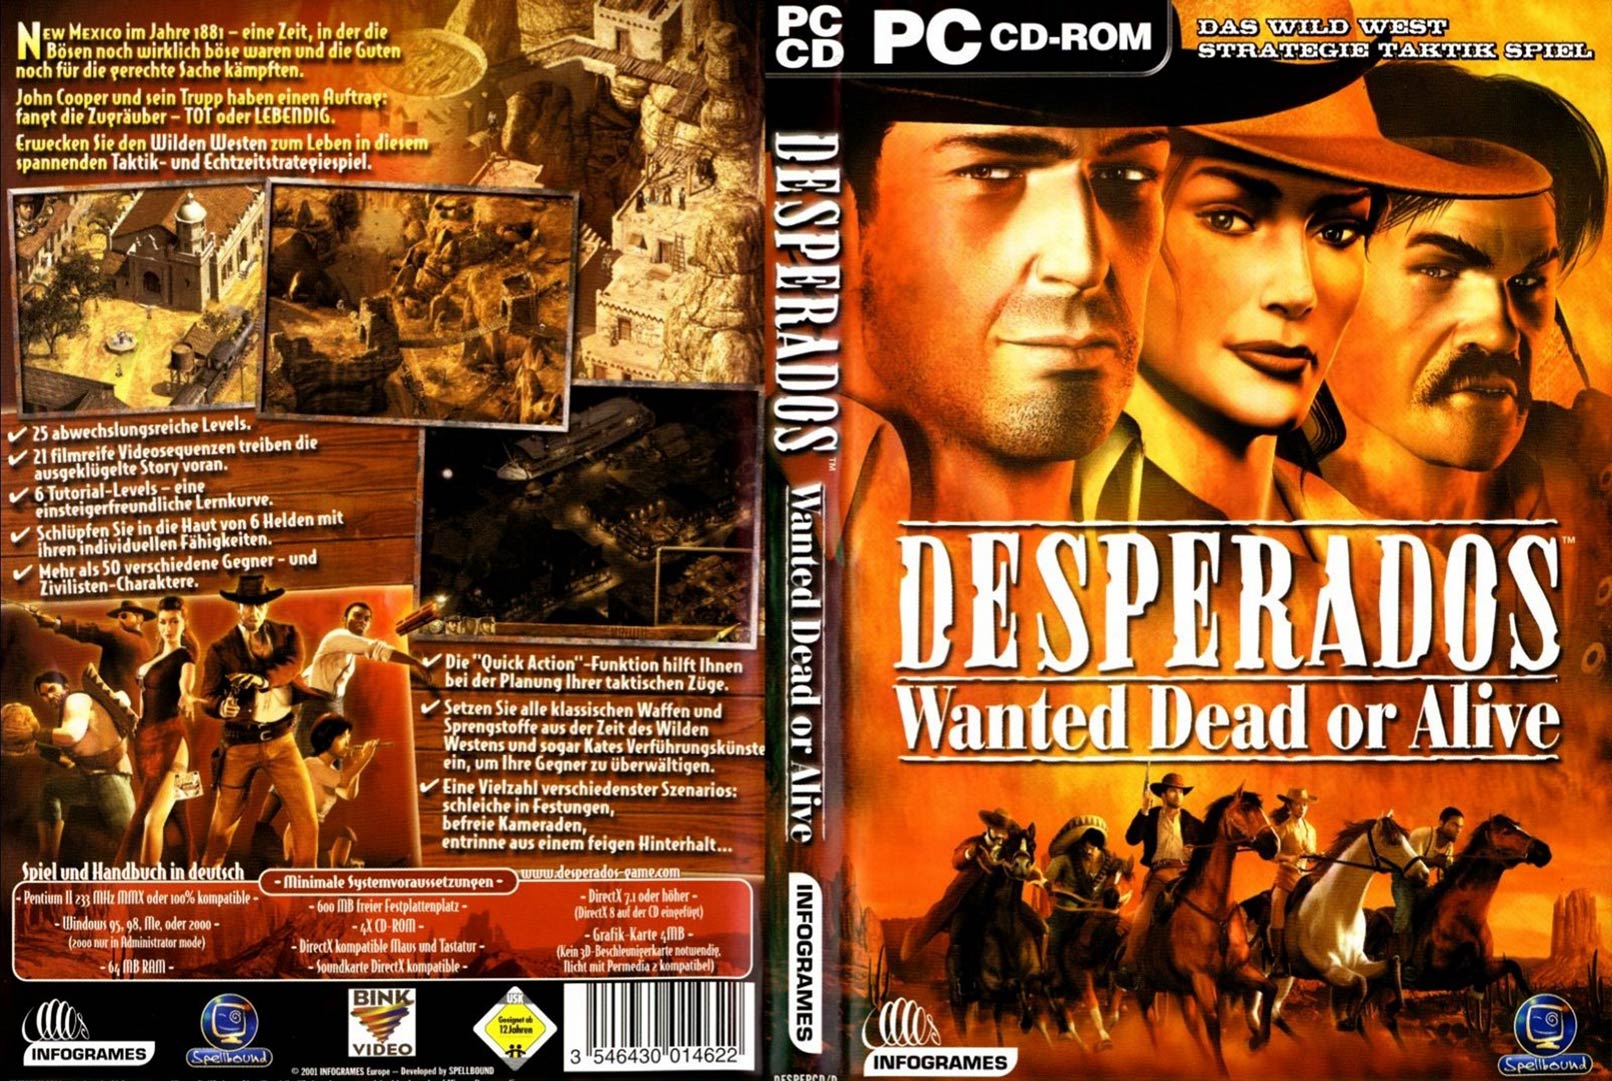 Desperados: Wanted Dead or Alive - DVD obal